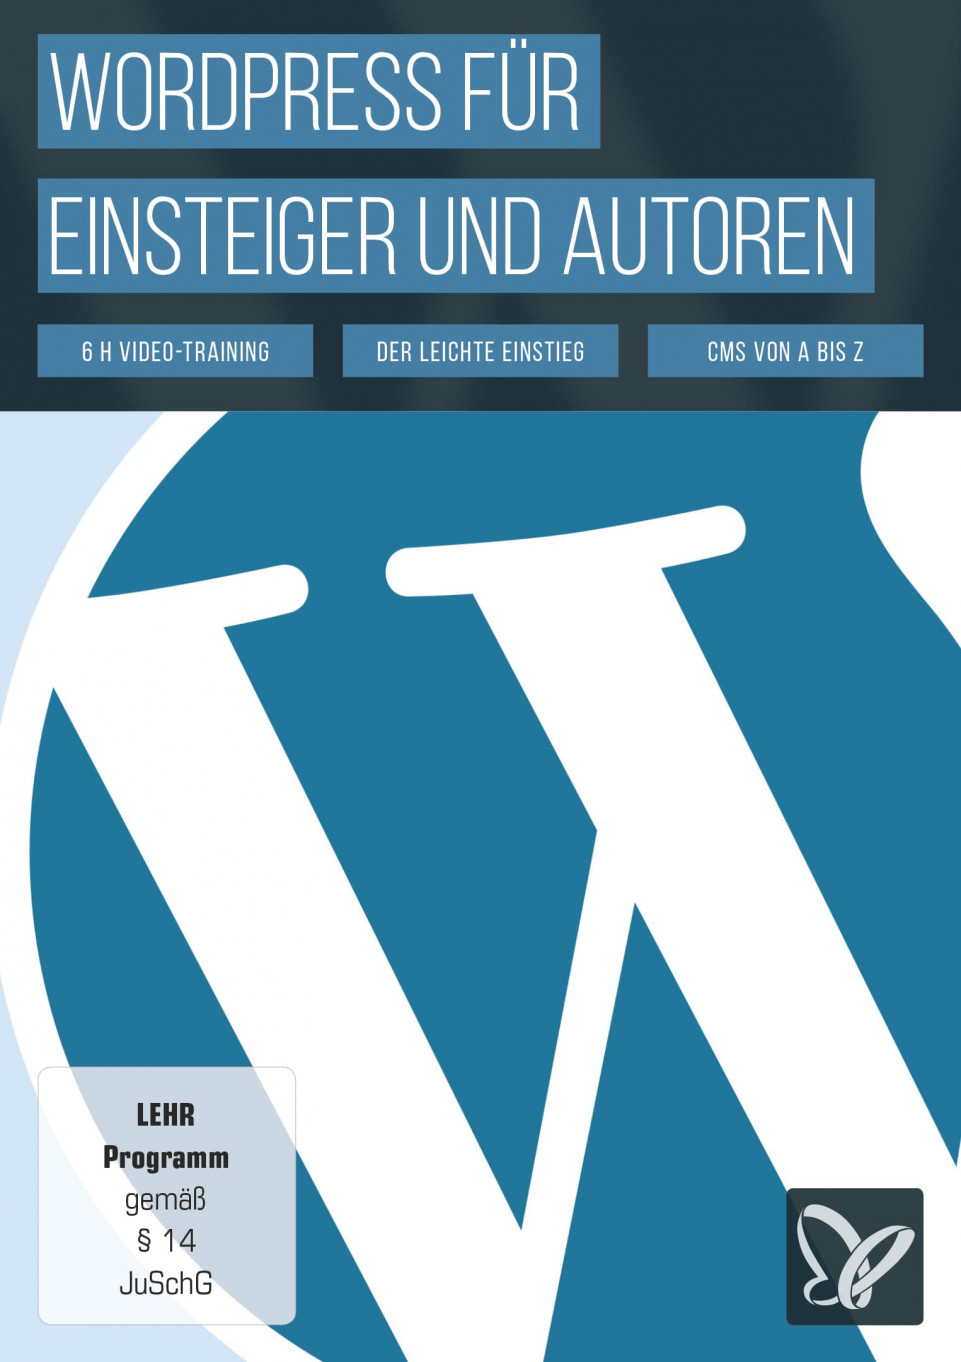 wordpress-fuer-einsteiger-und-autoren--onix